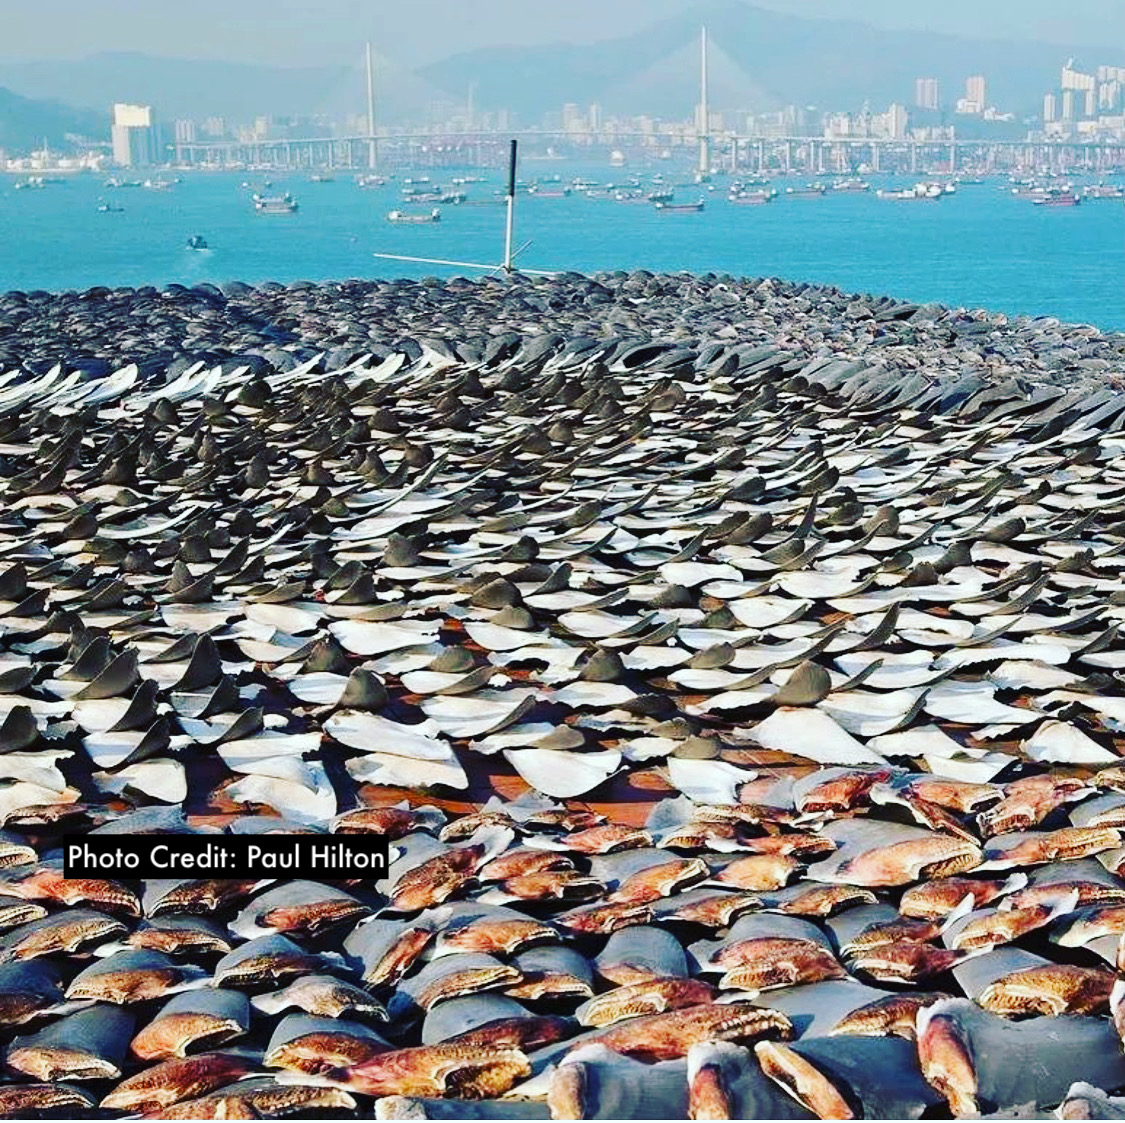 Hong Kong shark finning